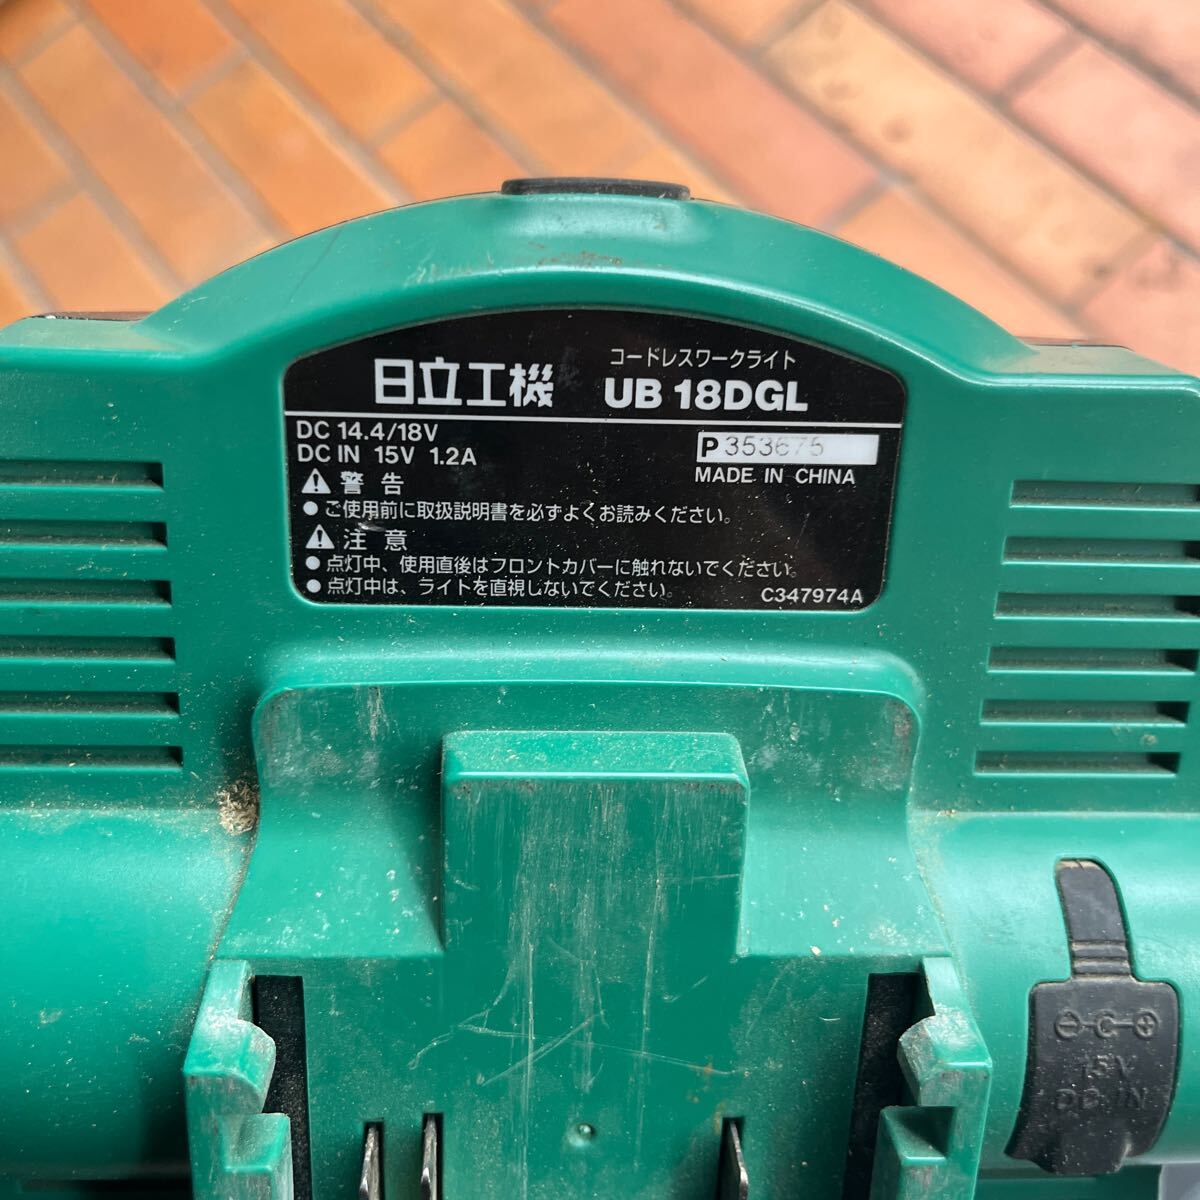 M-1207*80 размер HITACHI Hitachi Koki беспроводной рабочее освещение UB18DGL рабочее состояние подтверждено 